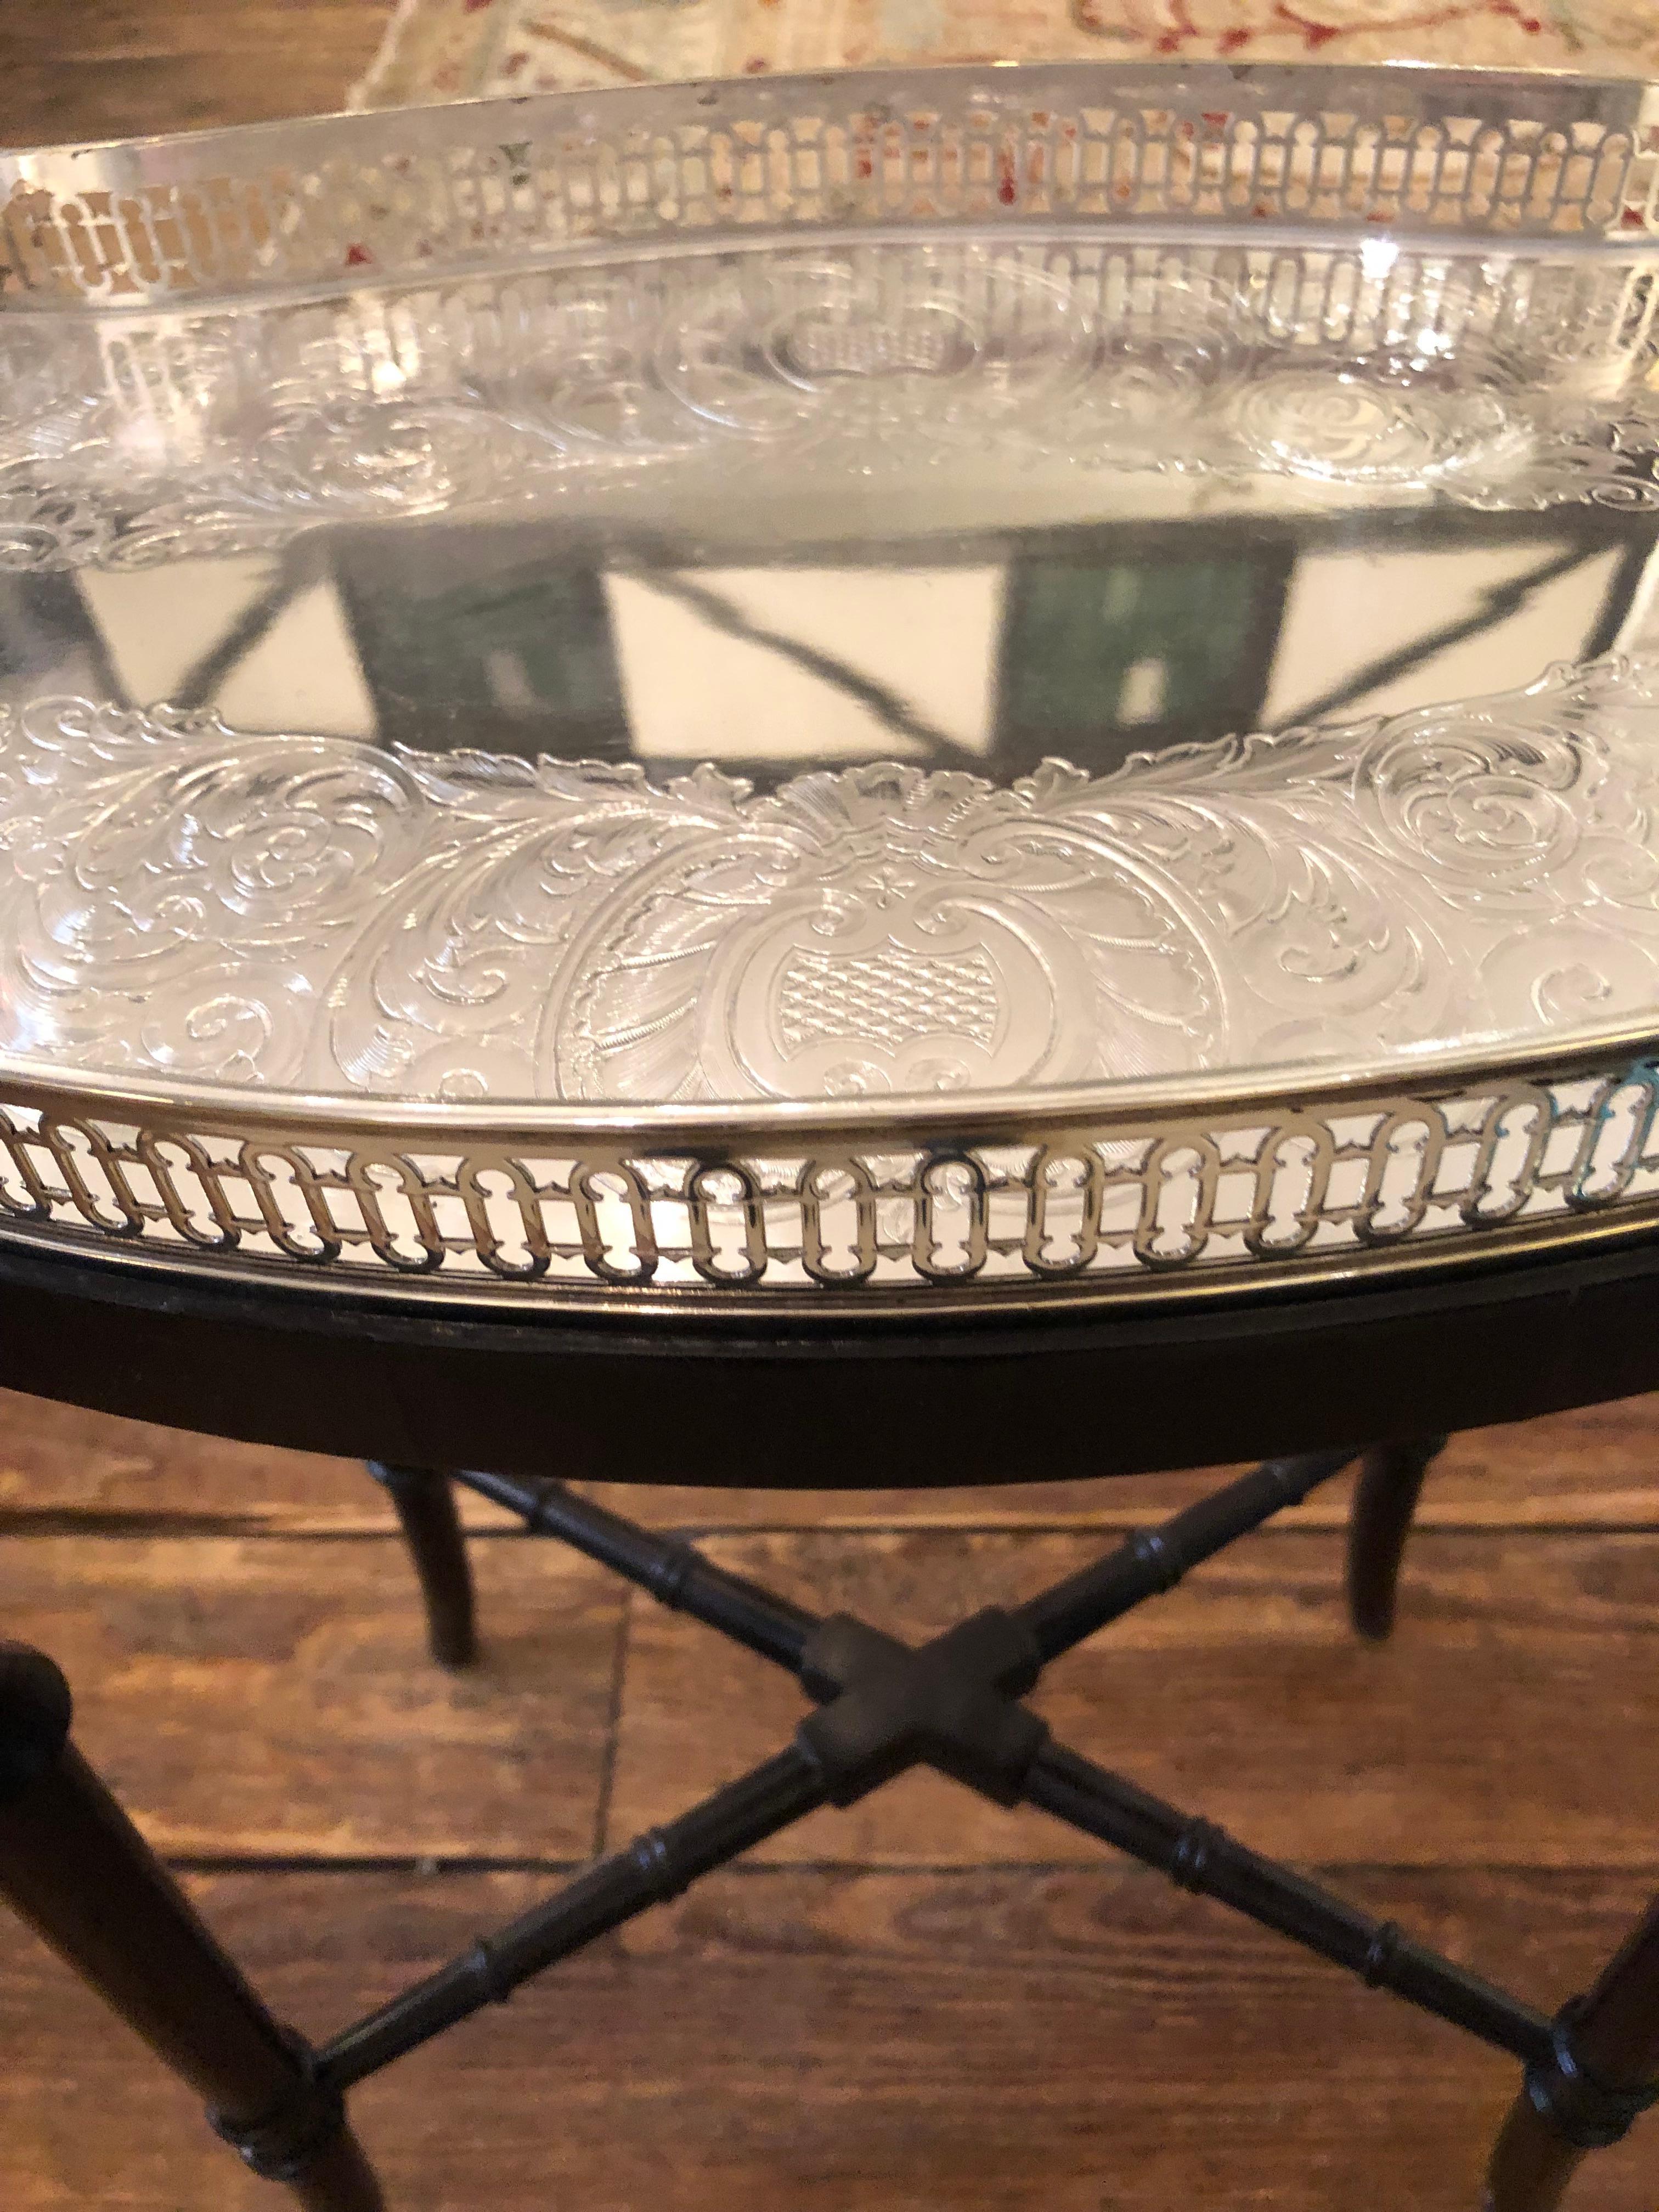 Elégante petite table d'appoint, parfaite pour les cocktails, avec une base noire festonnée de Nininger & Co, parfaitement équipée d'un magnifique plateau amovible en métal argenté gravé.